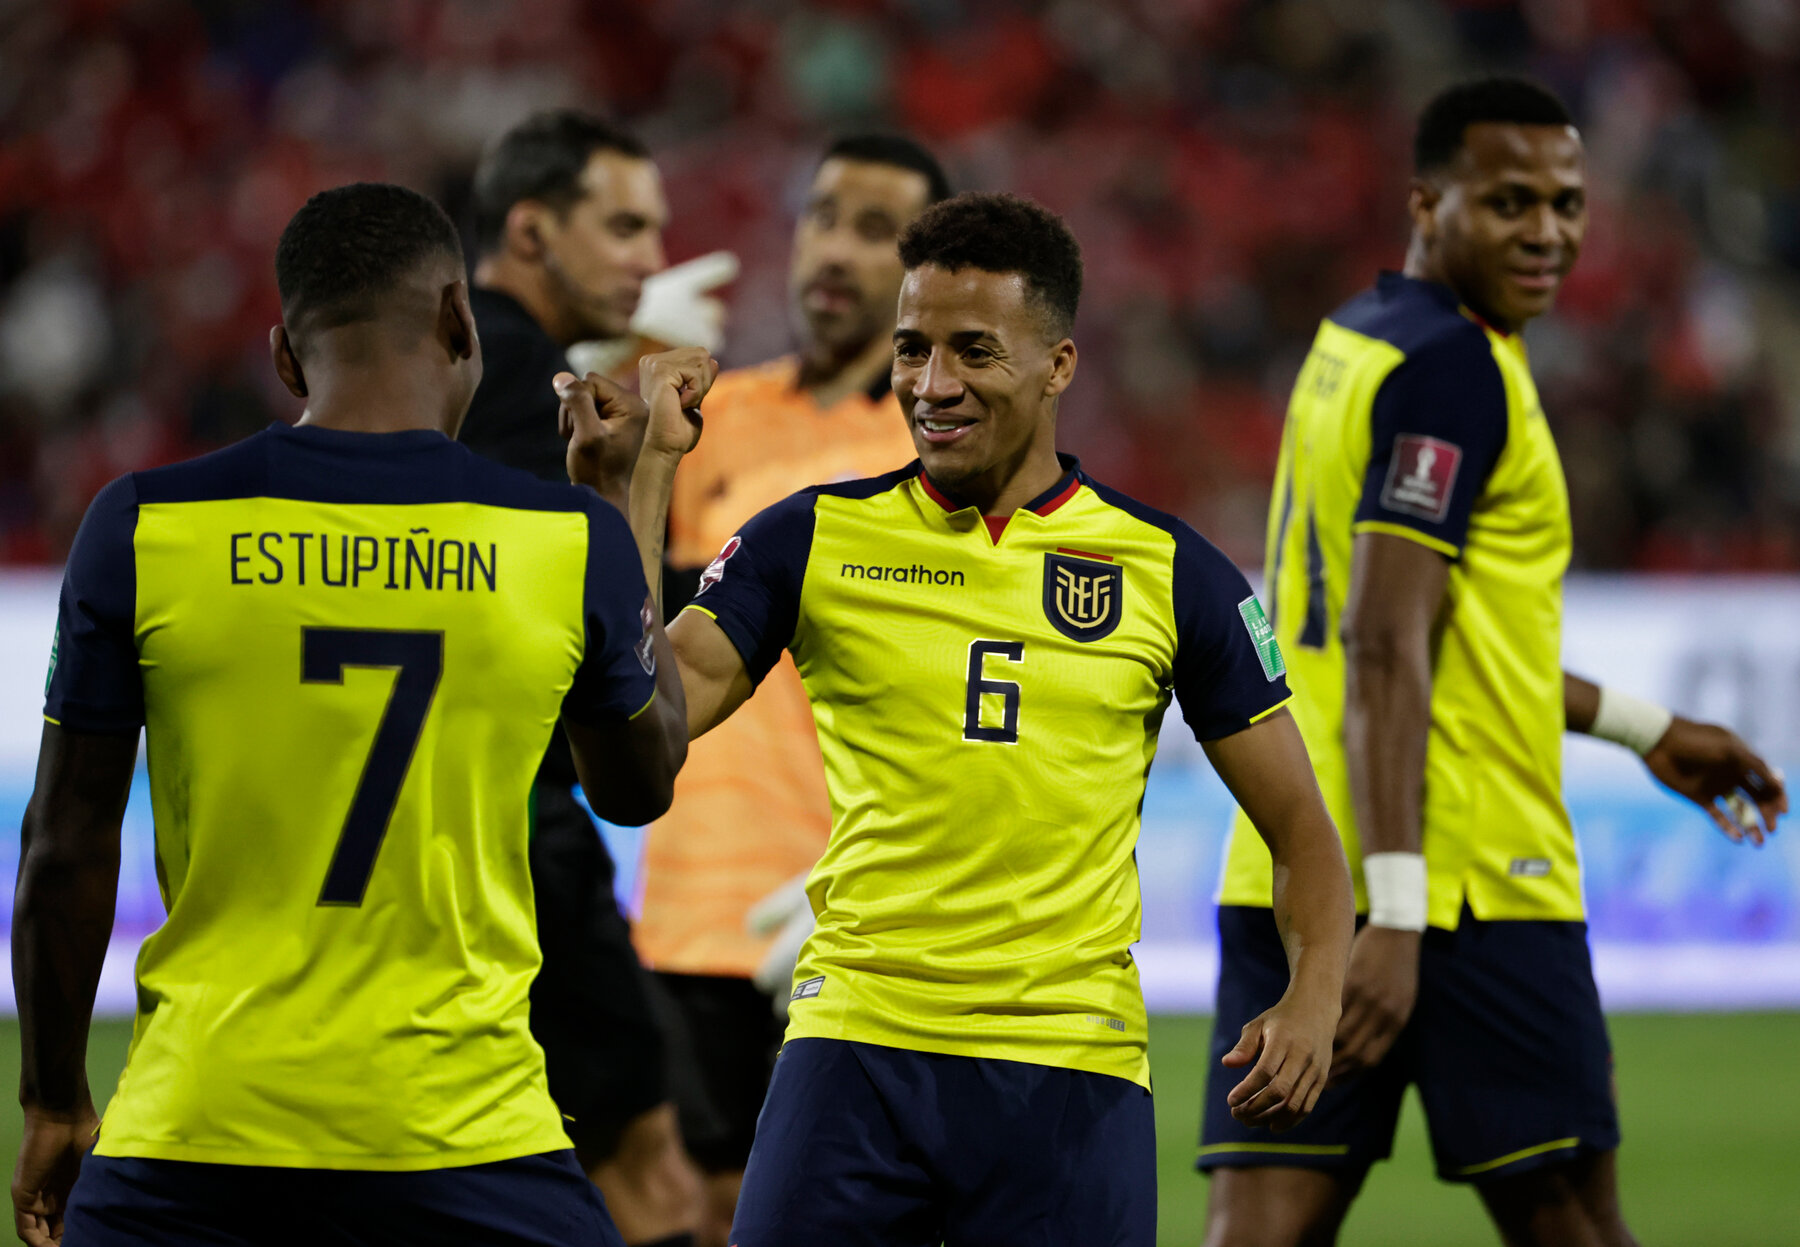 Có tới 8 tuyển thủ Ecuador bị cáo buộc nhận 7,4 triệu USD để buông cho Qatar giành chiến thắng